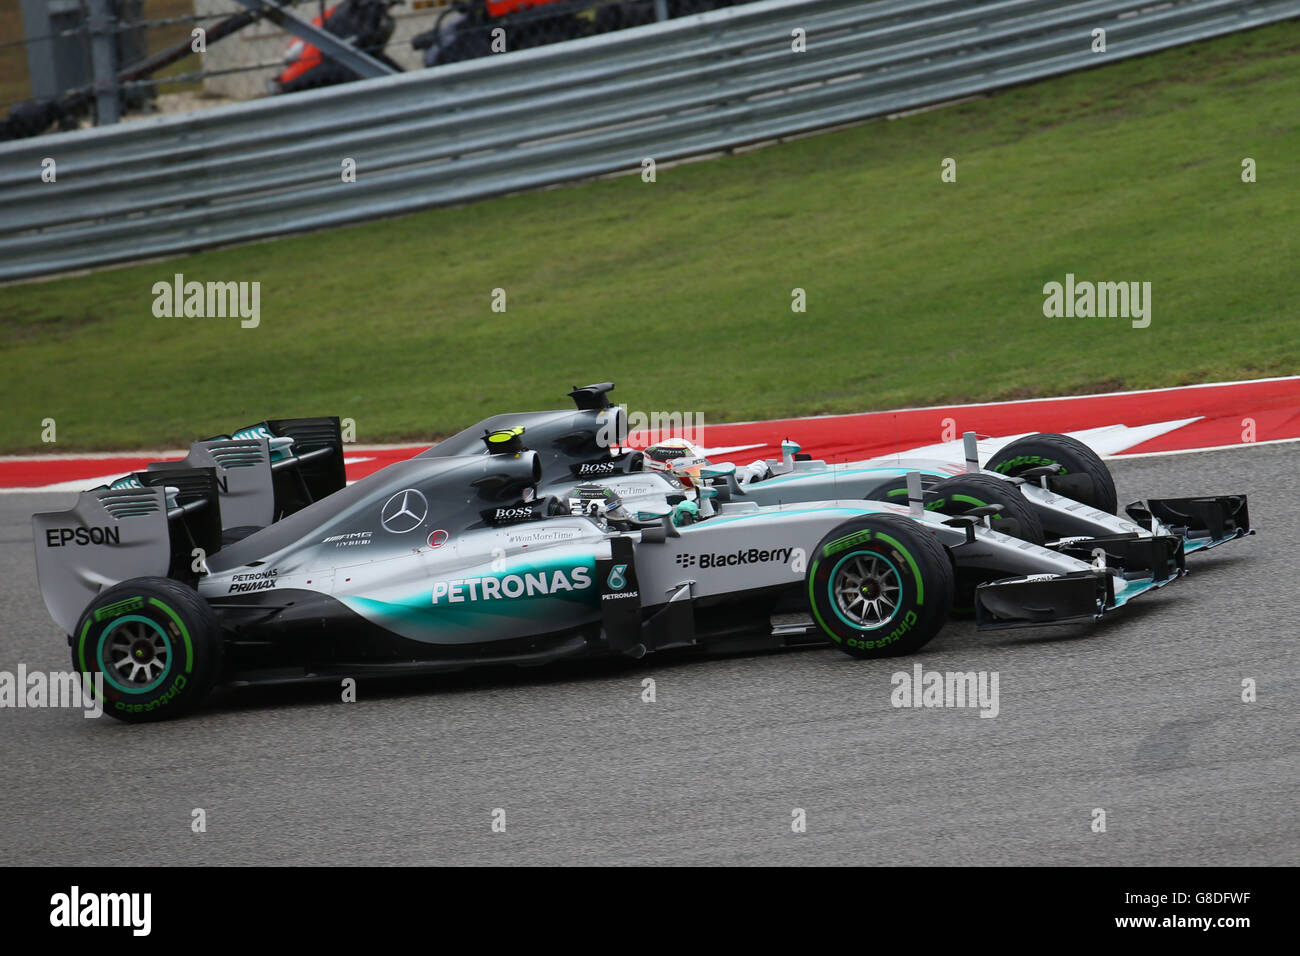 Mercedes' Lewis Hamilton durante il Gran Premio degli Stati Uniti al circuito delle Americhe ad Austin, Texas, USA. Foto Stock